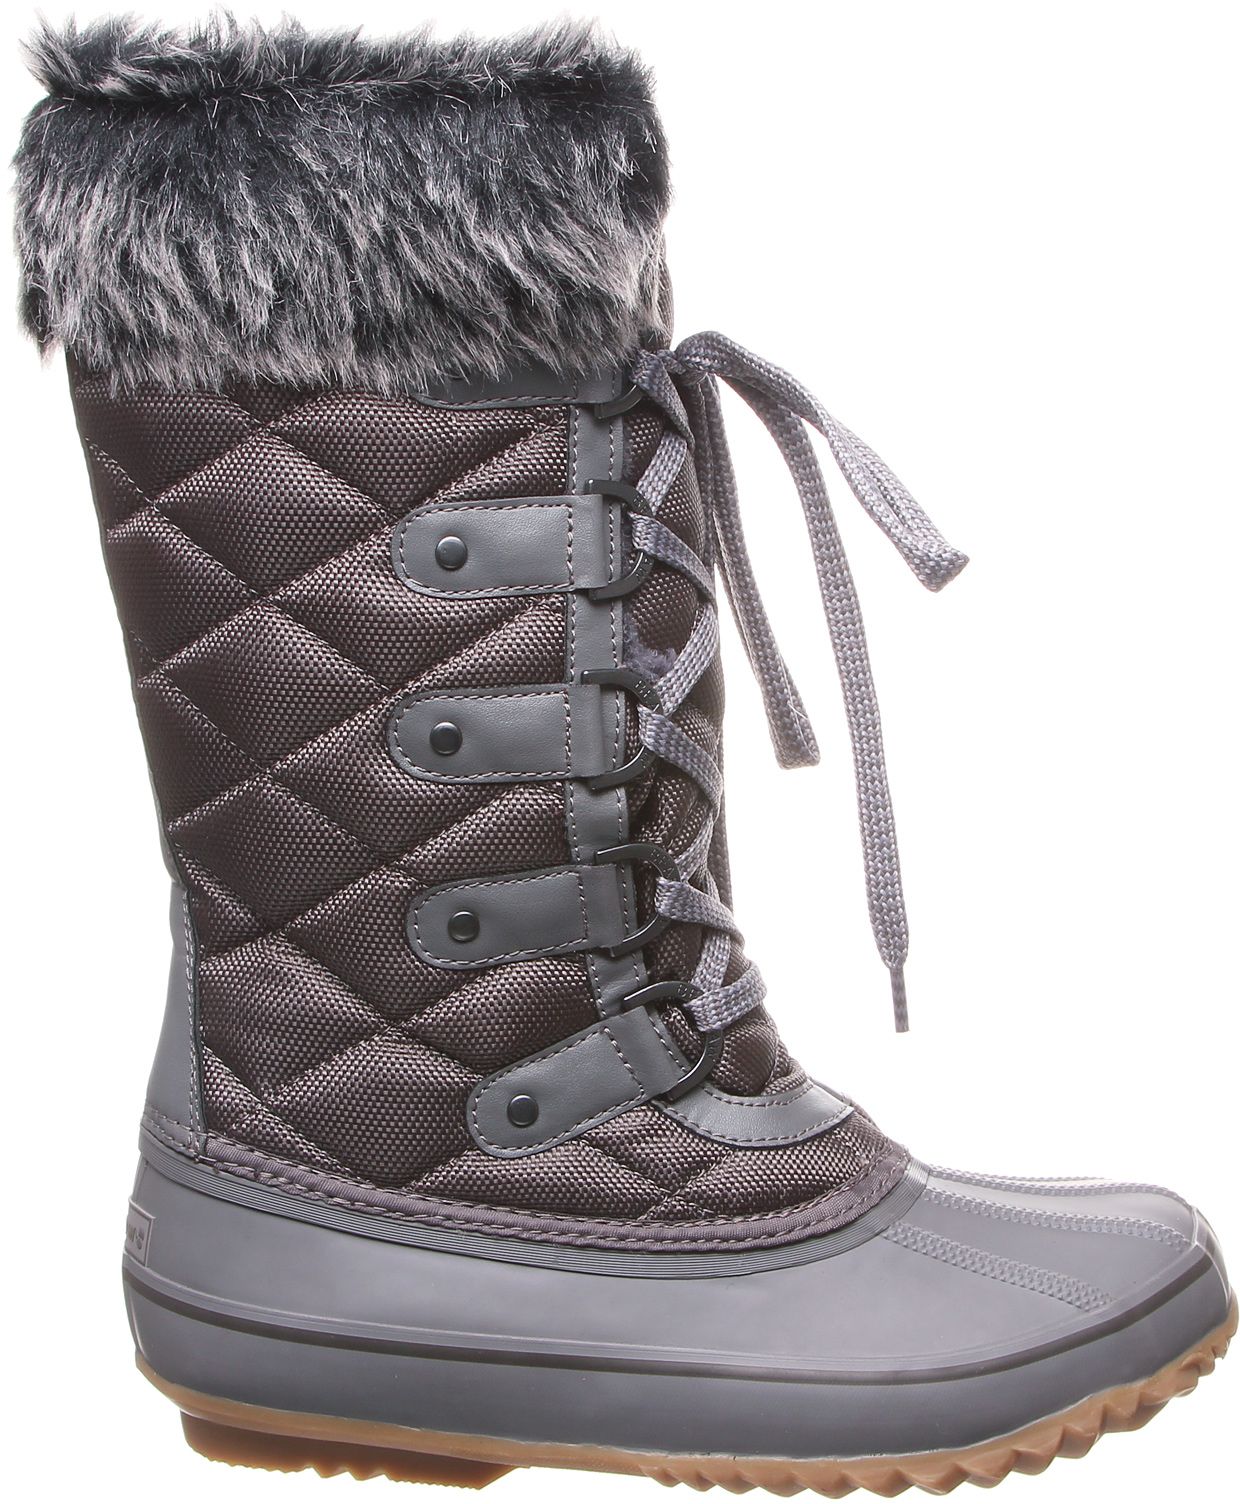 200g winter boots